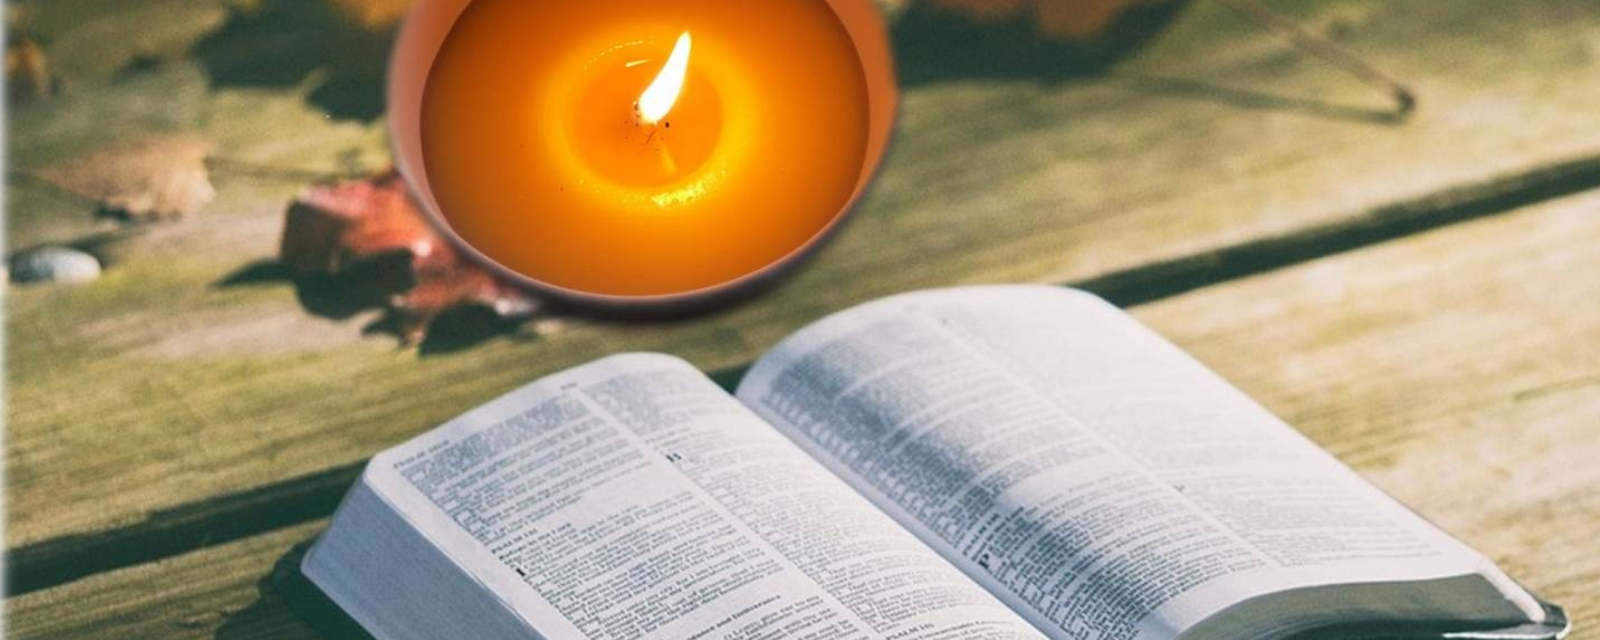 Foto de uma vela com a bíblia, representando a espiritualidade da Instituição.